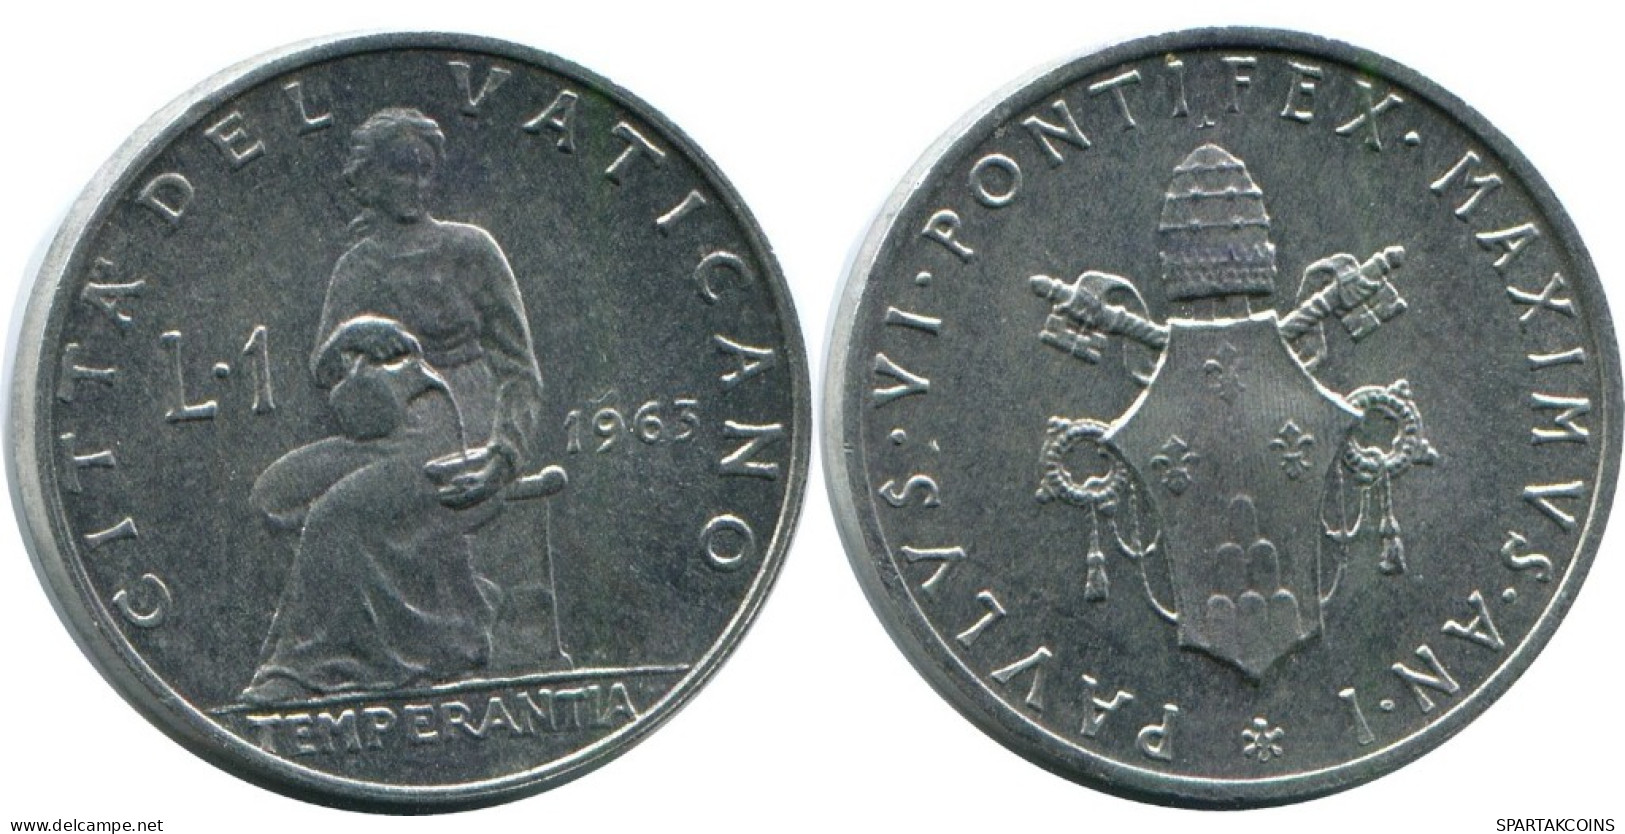 1 LIRE 1963 VATICANO VATICAN Moneda Paul VI (1963-1978) #AH380.13.E.A - Vatican